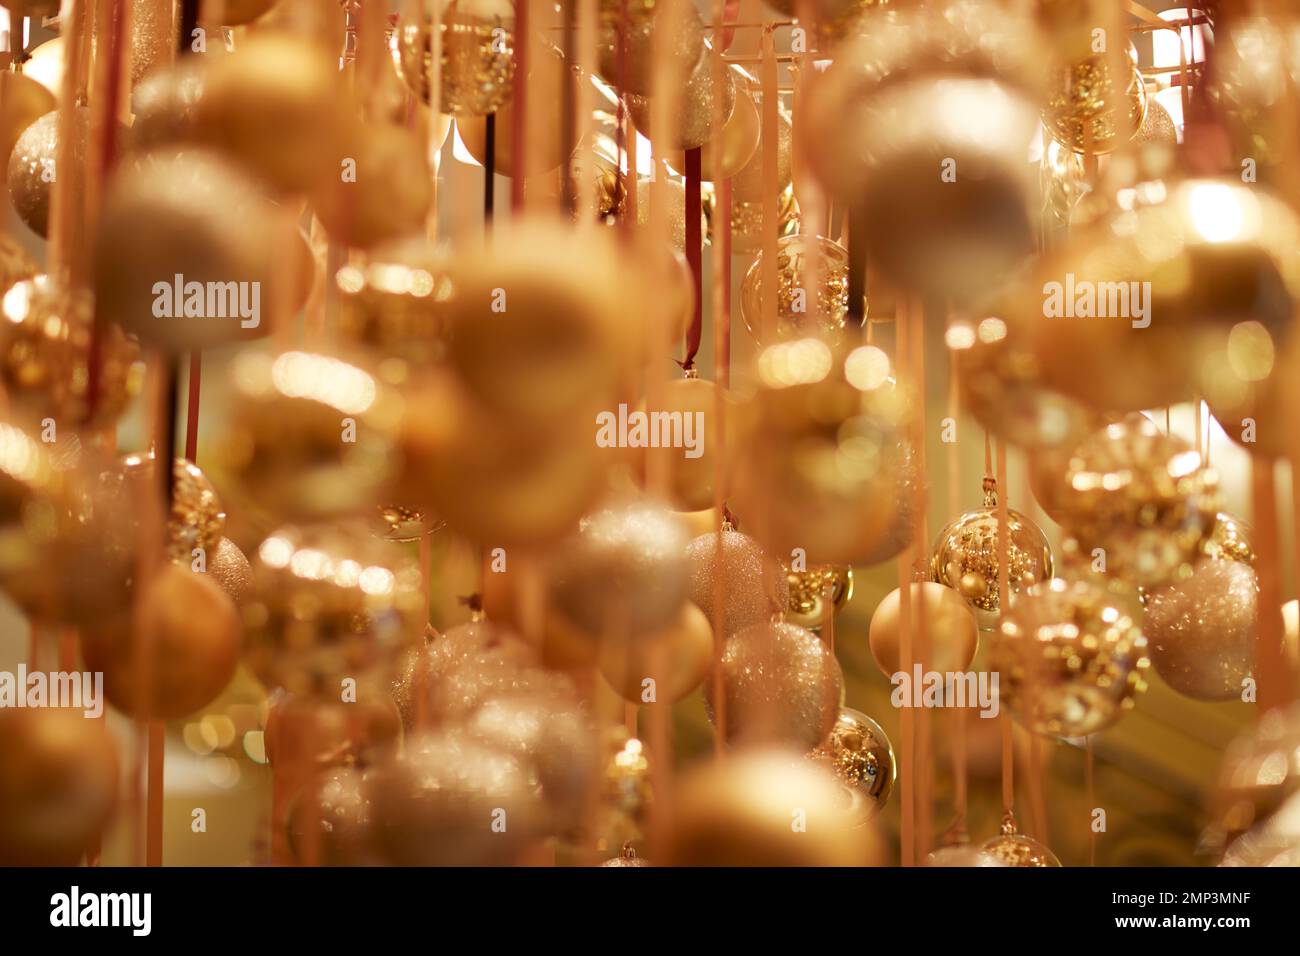 Goldene Weihnachtskugeln hängen über dem Band saisonale Weihnachtsfeier mit weichem Fokus, tropfenförmiger Fokus, ätherische magische Partydekoration Stockfoto